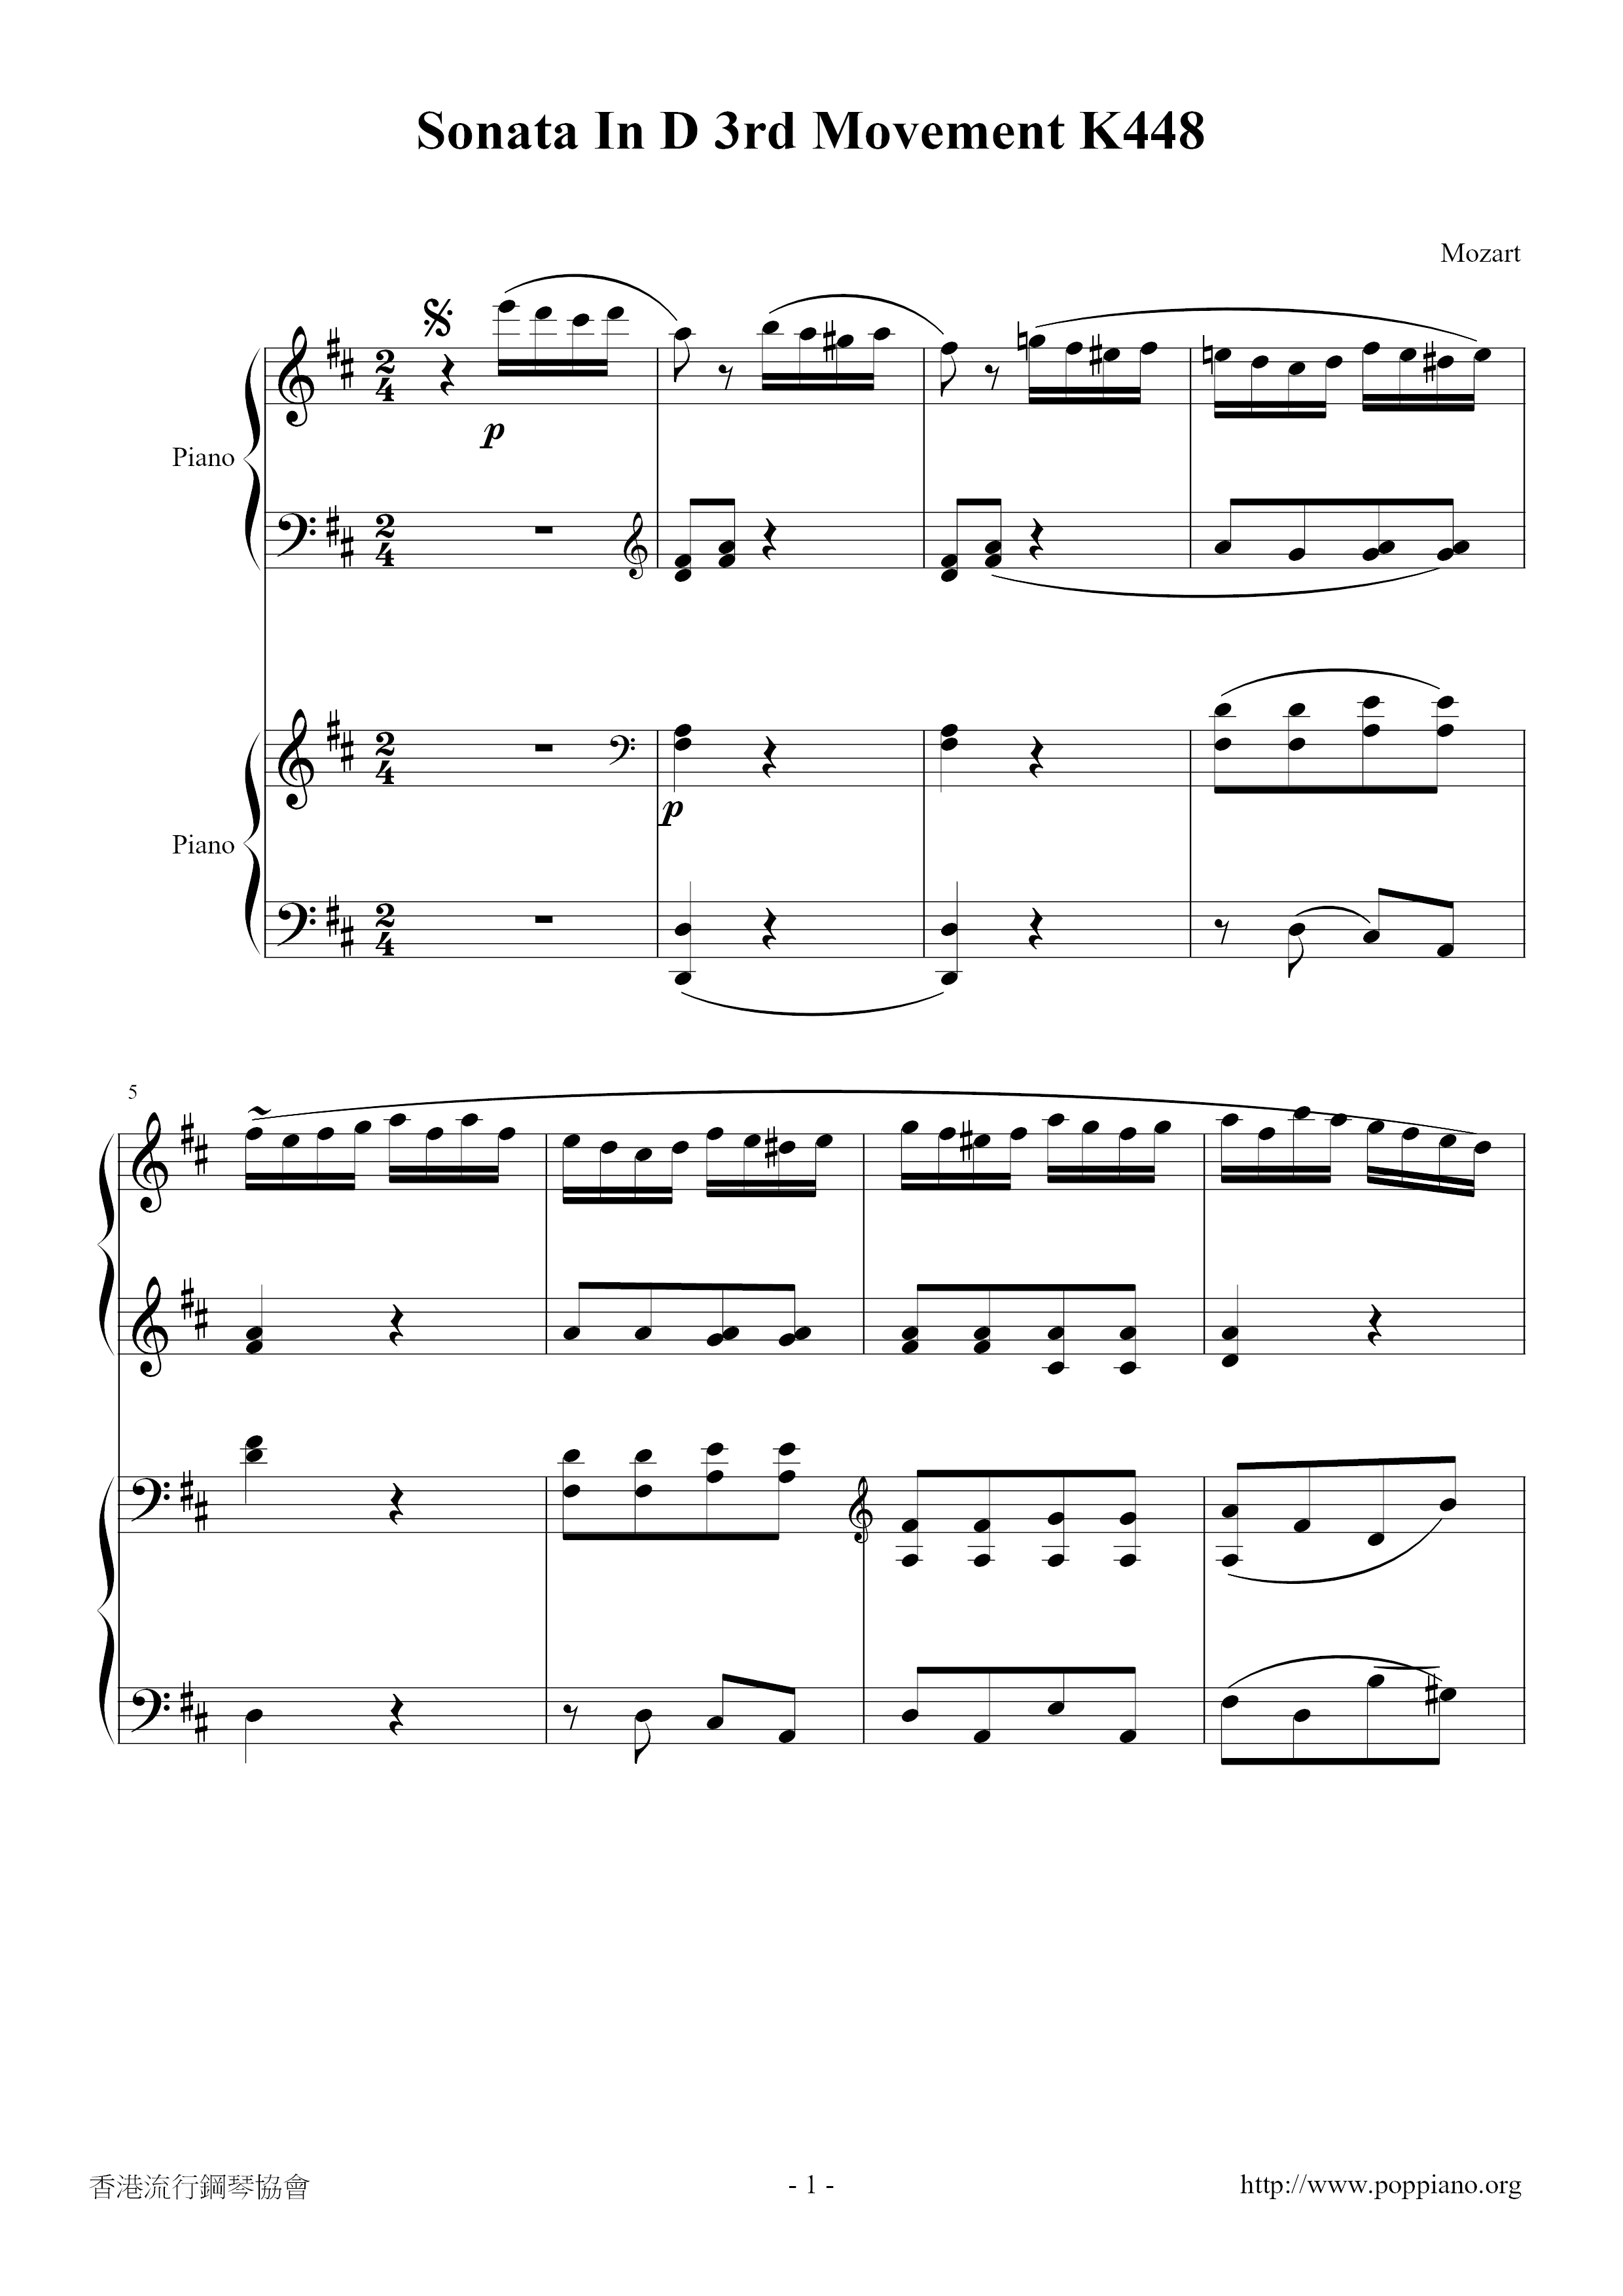 Sonata in D 3rd Movement K448 Score